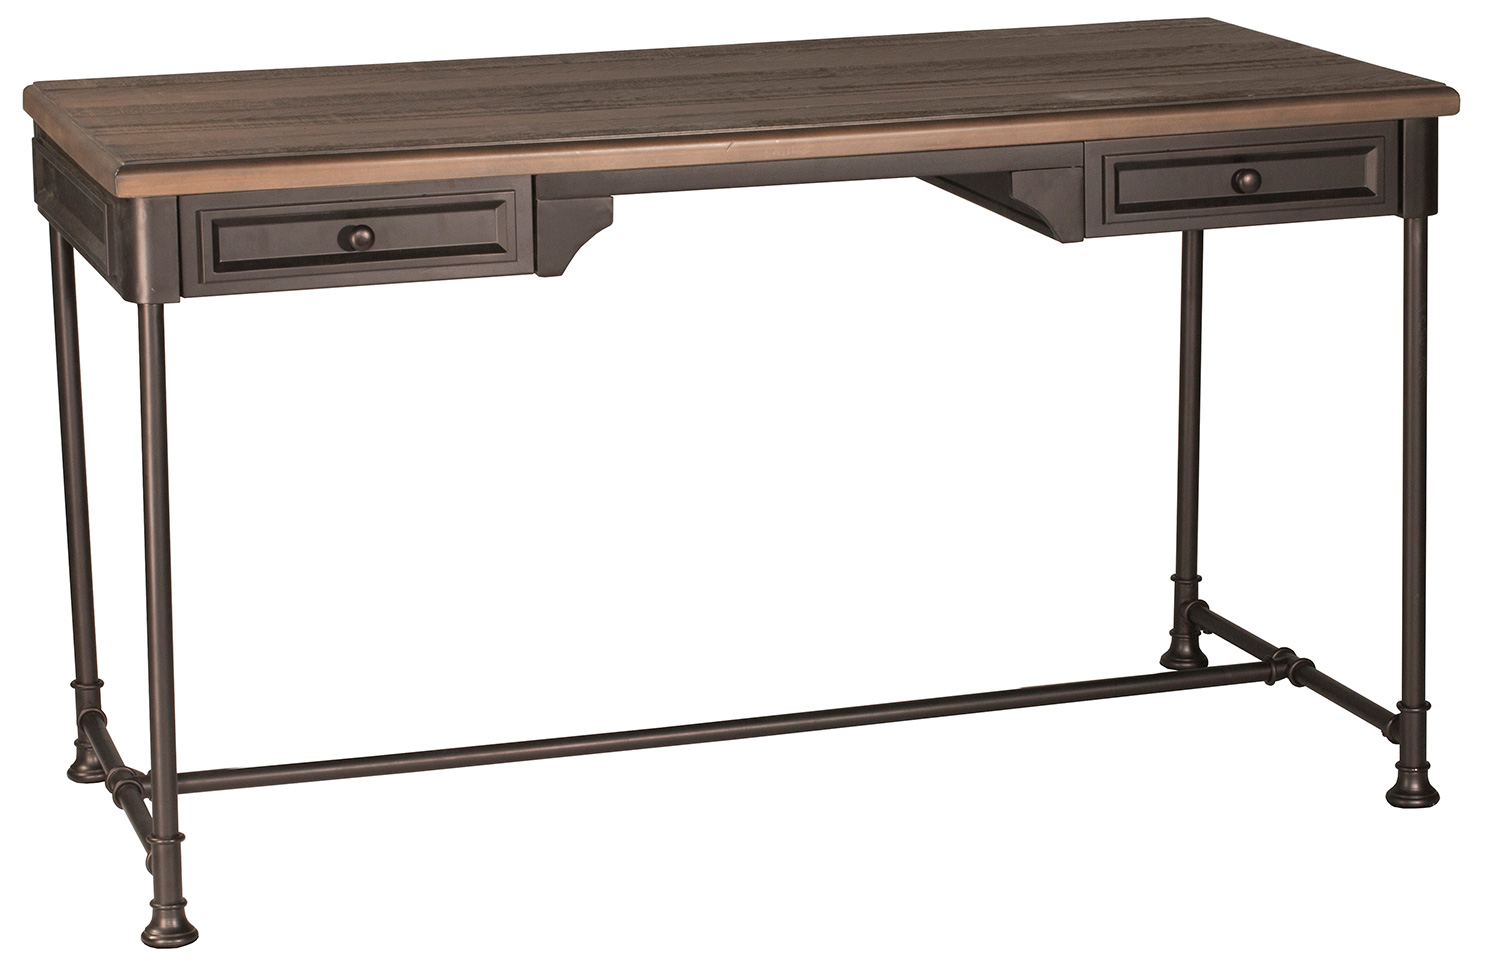 Hillsdale Casselberry Desk/Table - Walnut/Brown